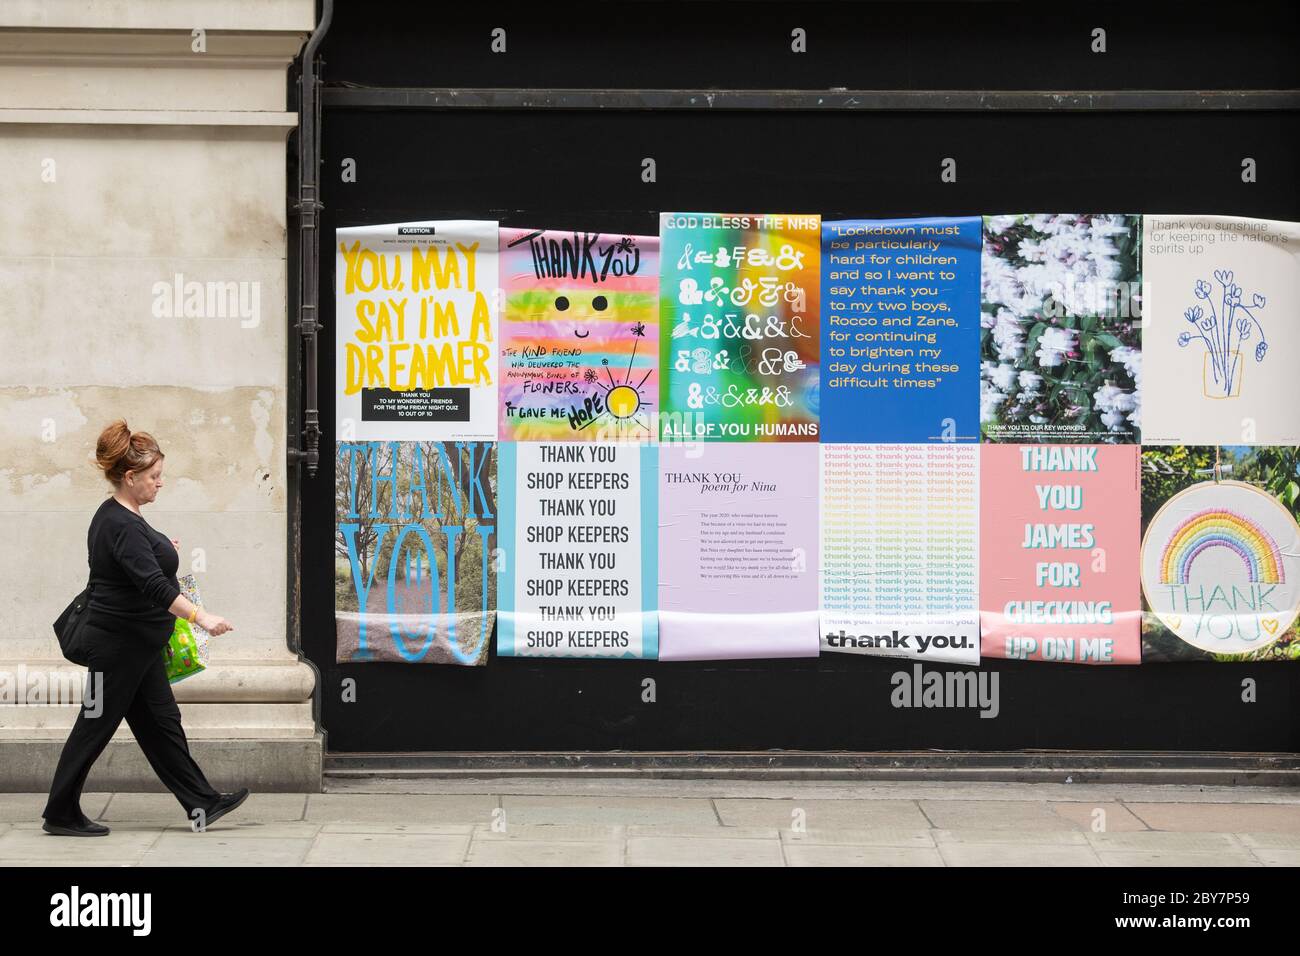 Eine Frau geht an den Fensterballen im Selfridge's in der Oxford Street, London vorbei und zeigt Dankesbotschaften von Selfridge's Mitarbeitern an Menschen, die ihnen während der Sperrung des Coronavirus geholfen haben. Stockfoto